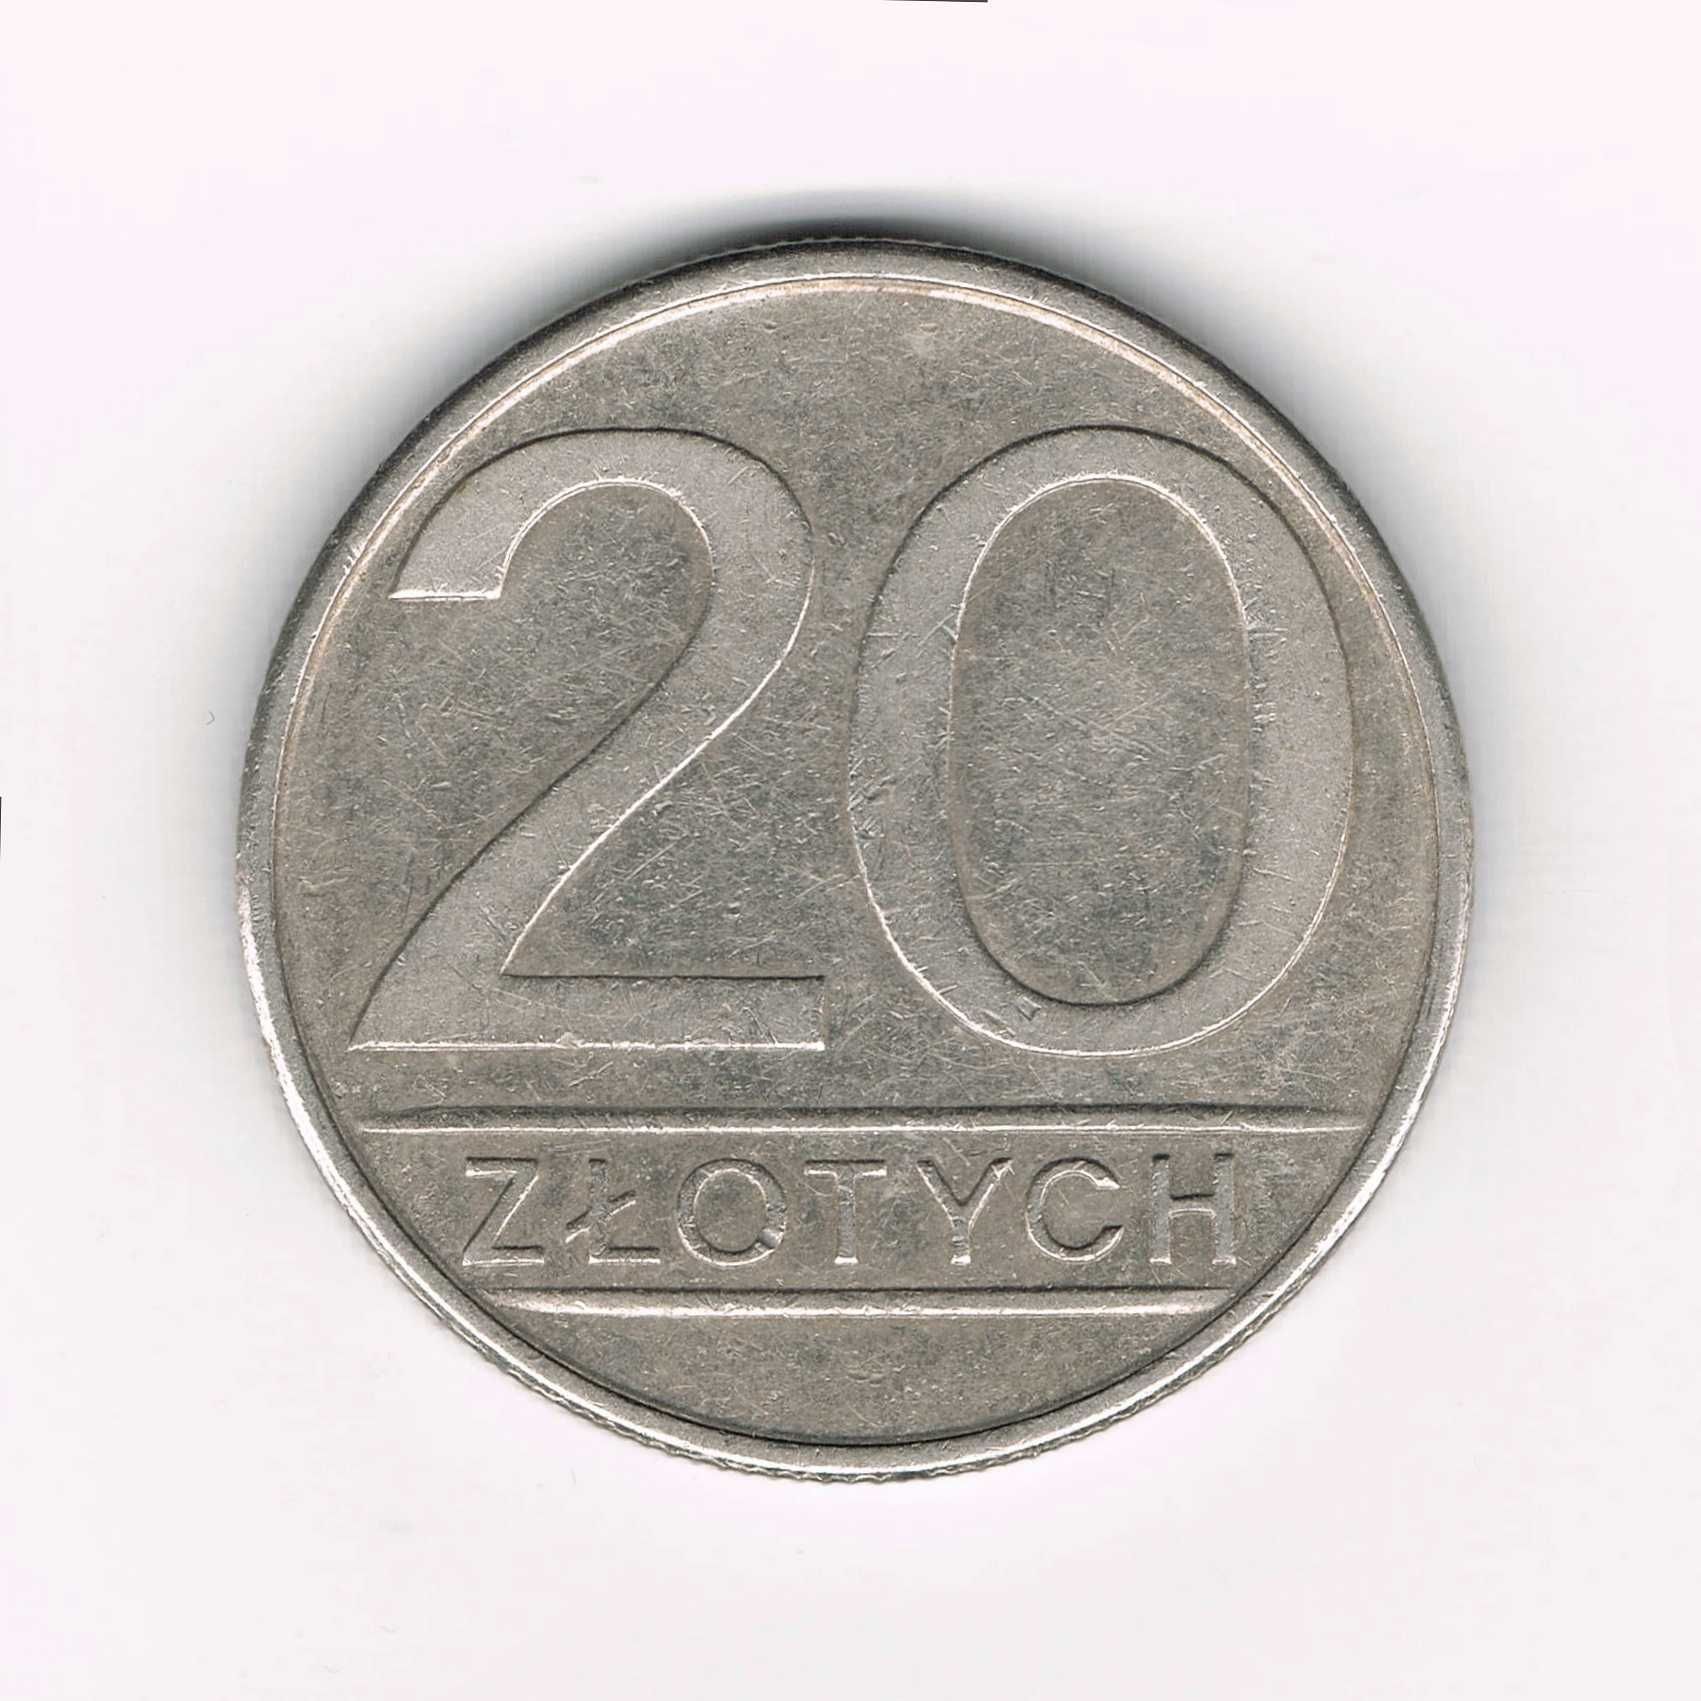 Moneta z okresu PRL - 1985 roku - 20 złotych